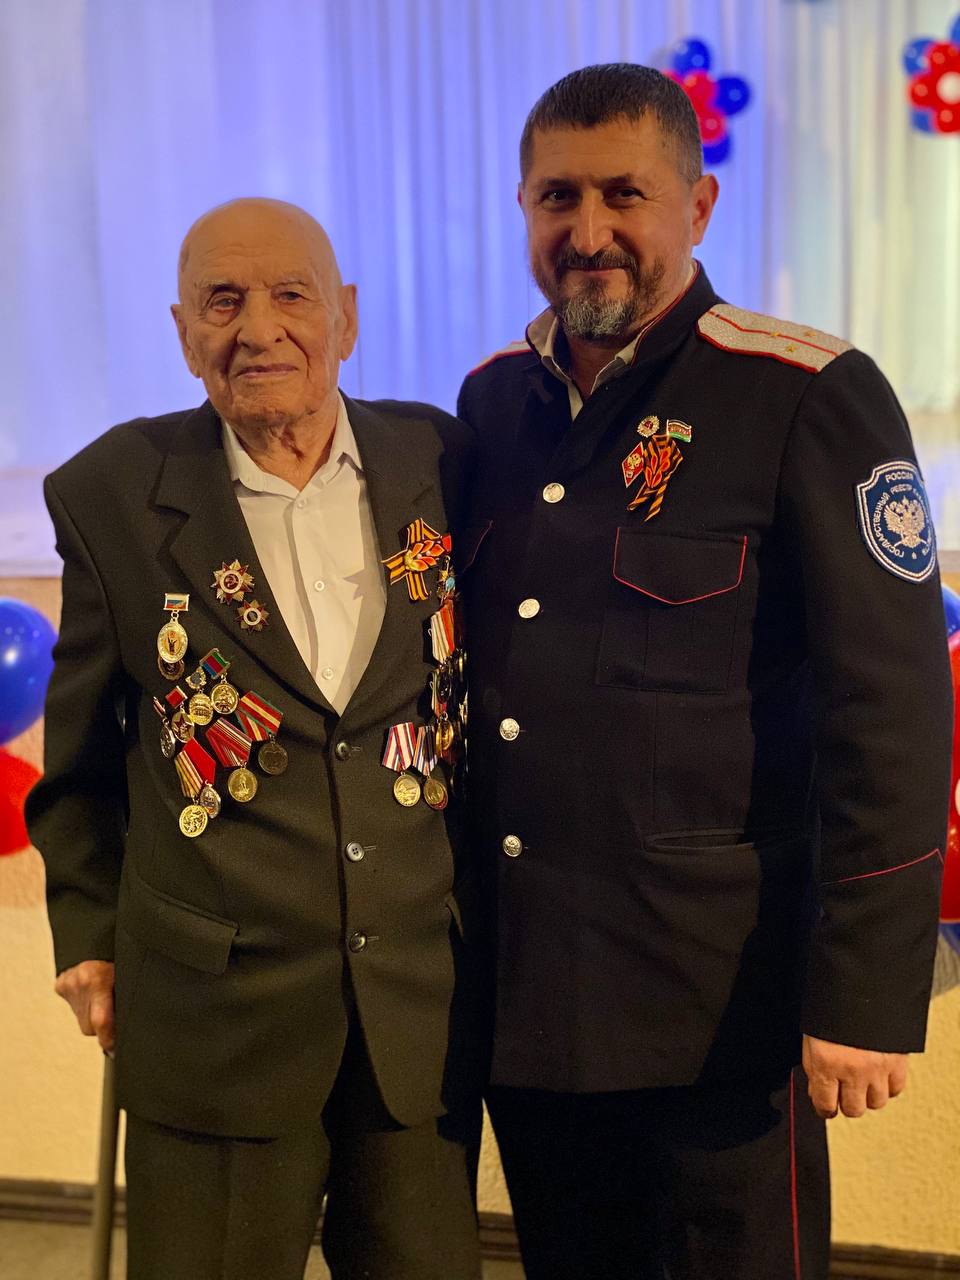 Сегодня особенный день, ведь исполняется 103 года нашему уважаемому ветерану Великой Отечественной войны и Почетному гражданину Геленджика Ивану Ивановичу Курбакову!